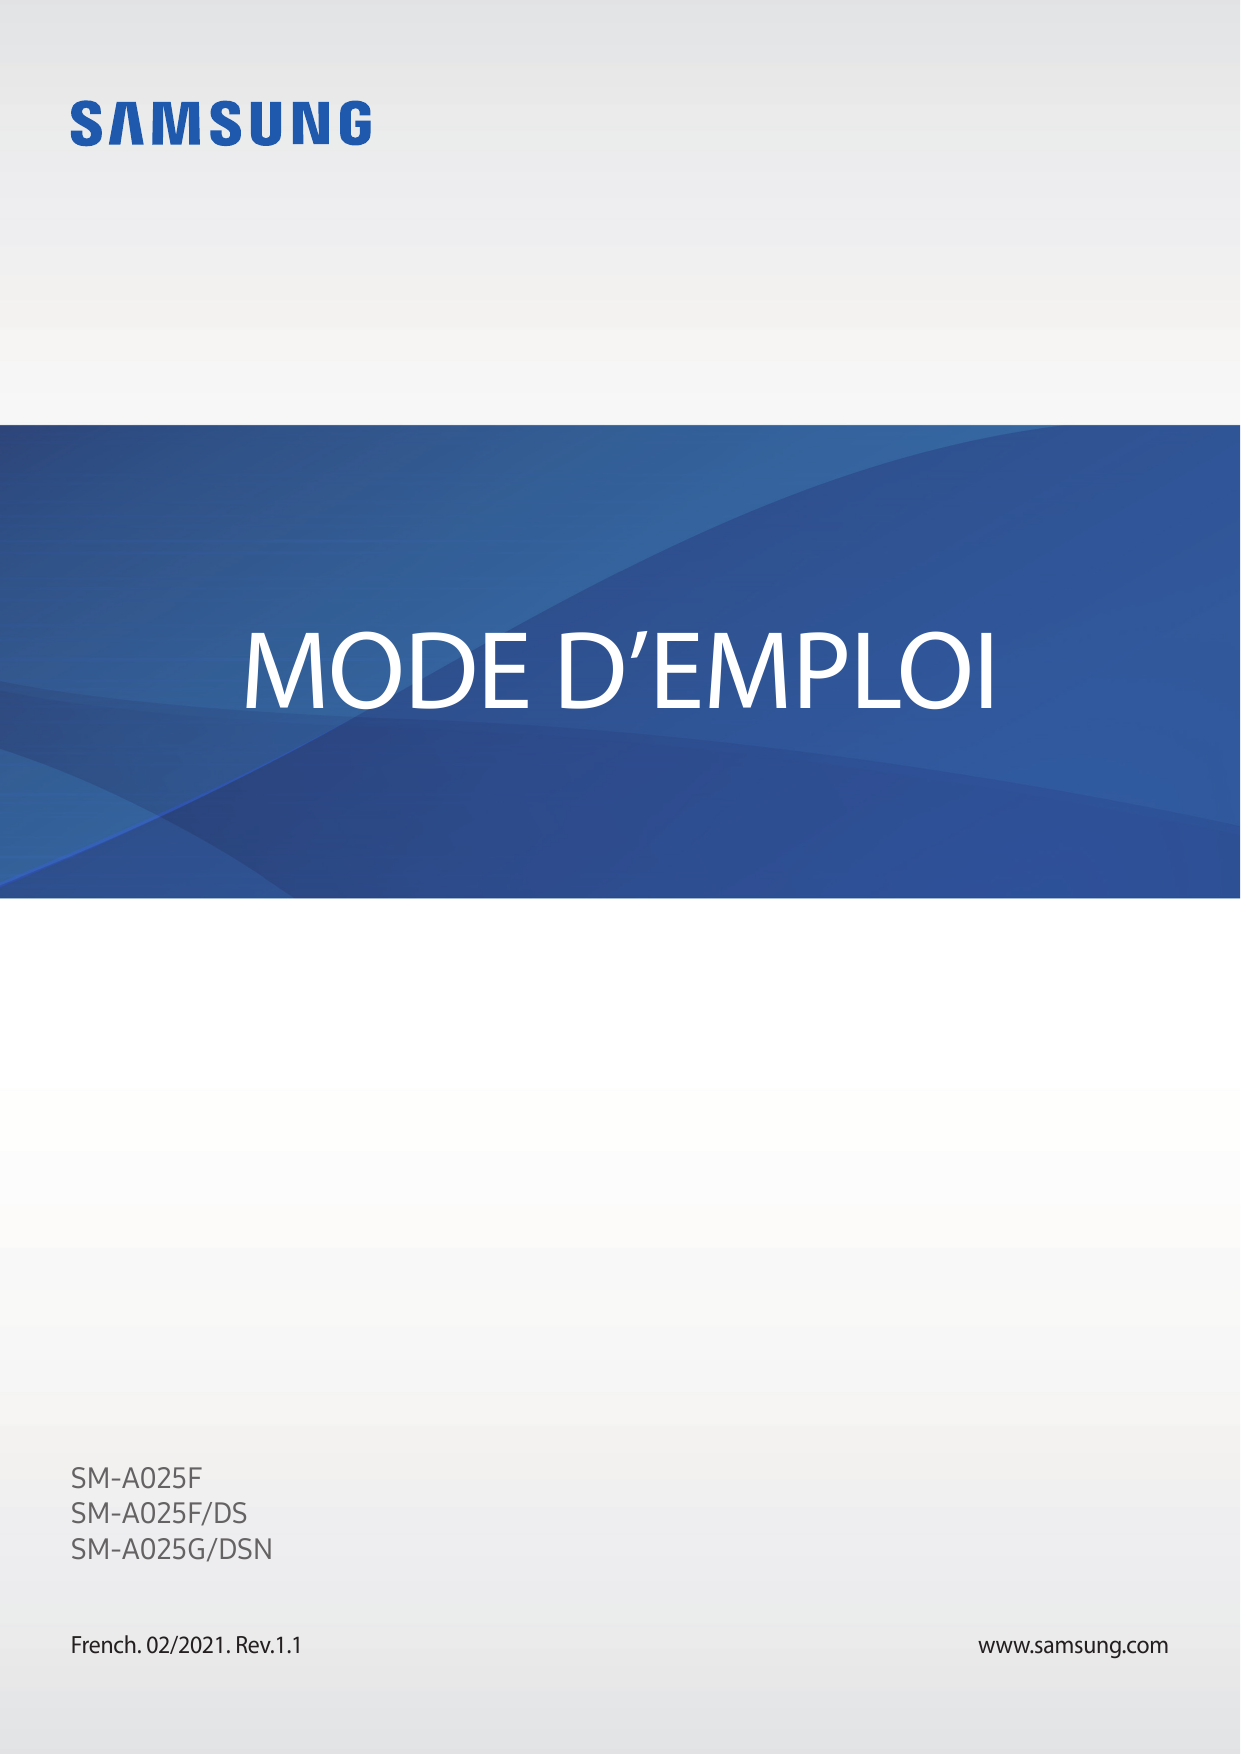 MODE D’EMPLOISM-A025FSM-A025F/DSSM-A025G/DSNFrench. 02/2021. Rev.1.1www.samsung.com